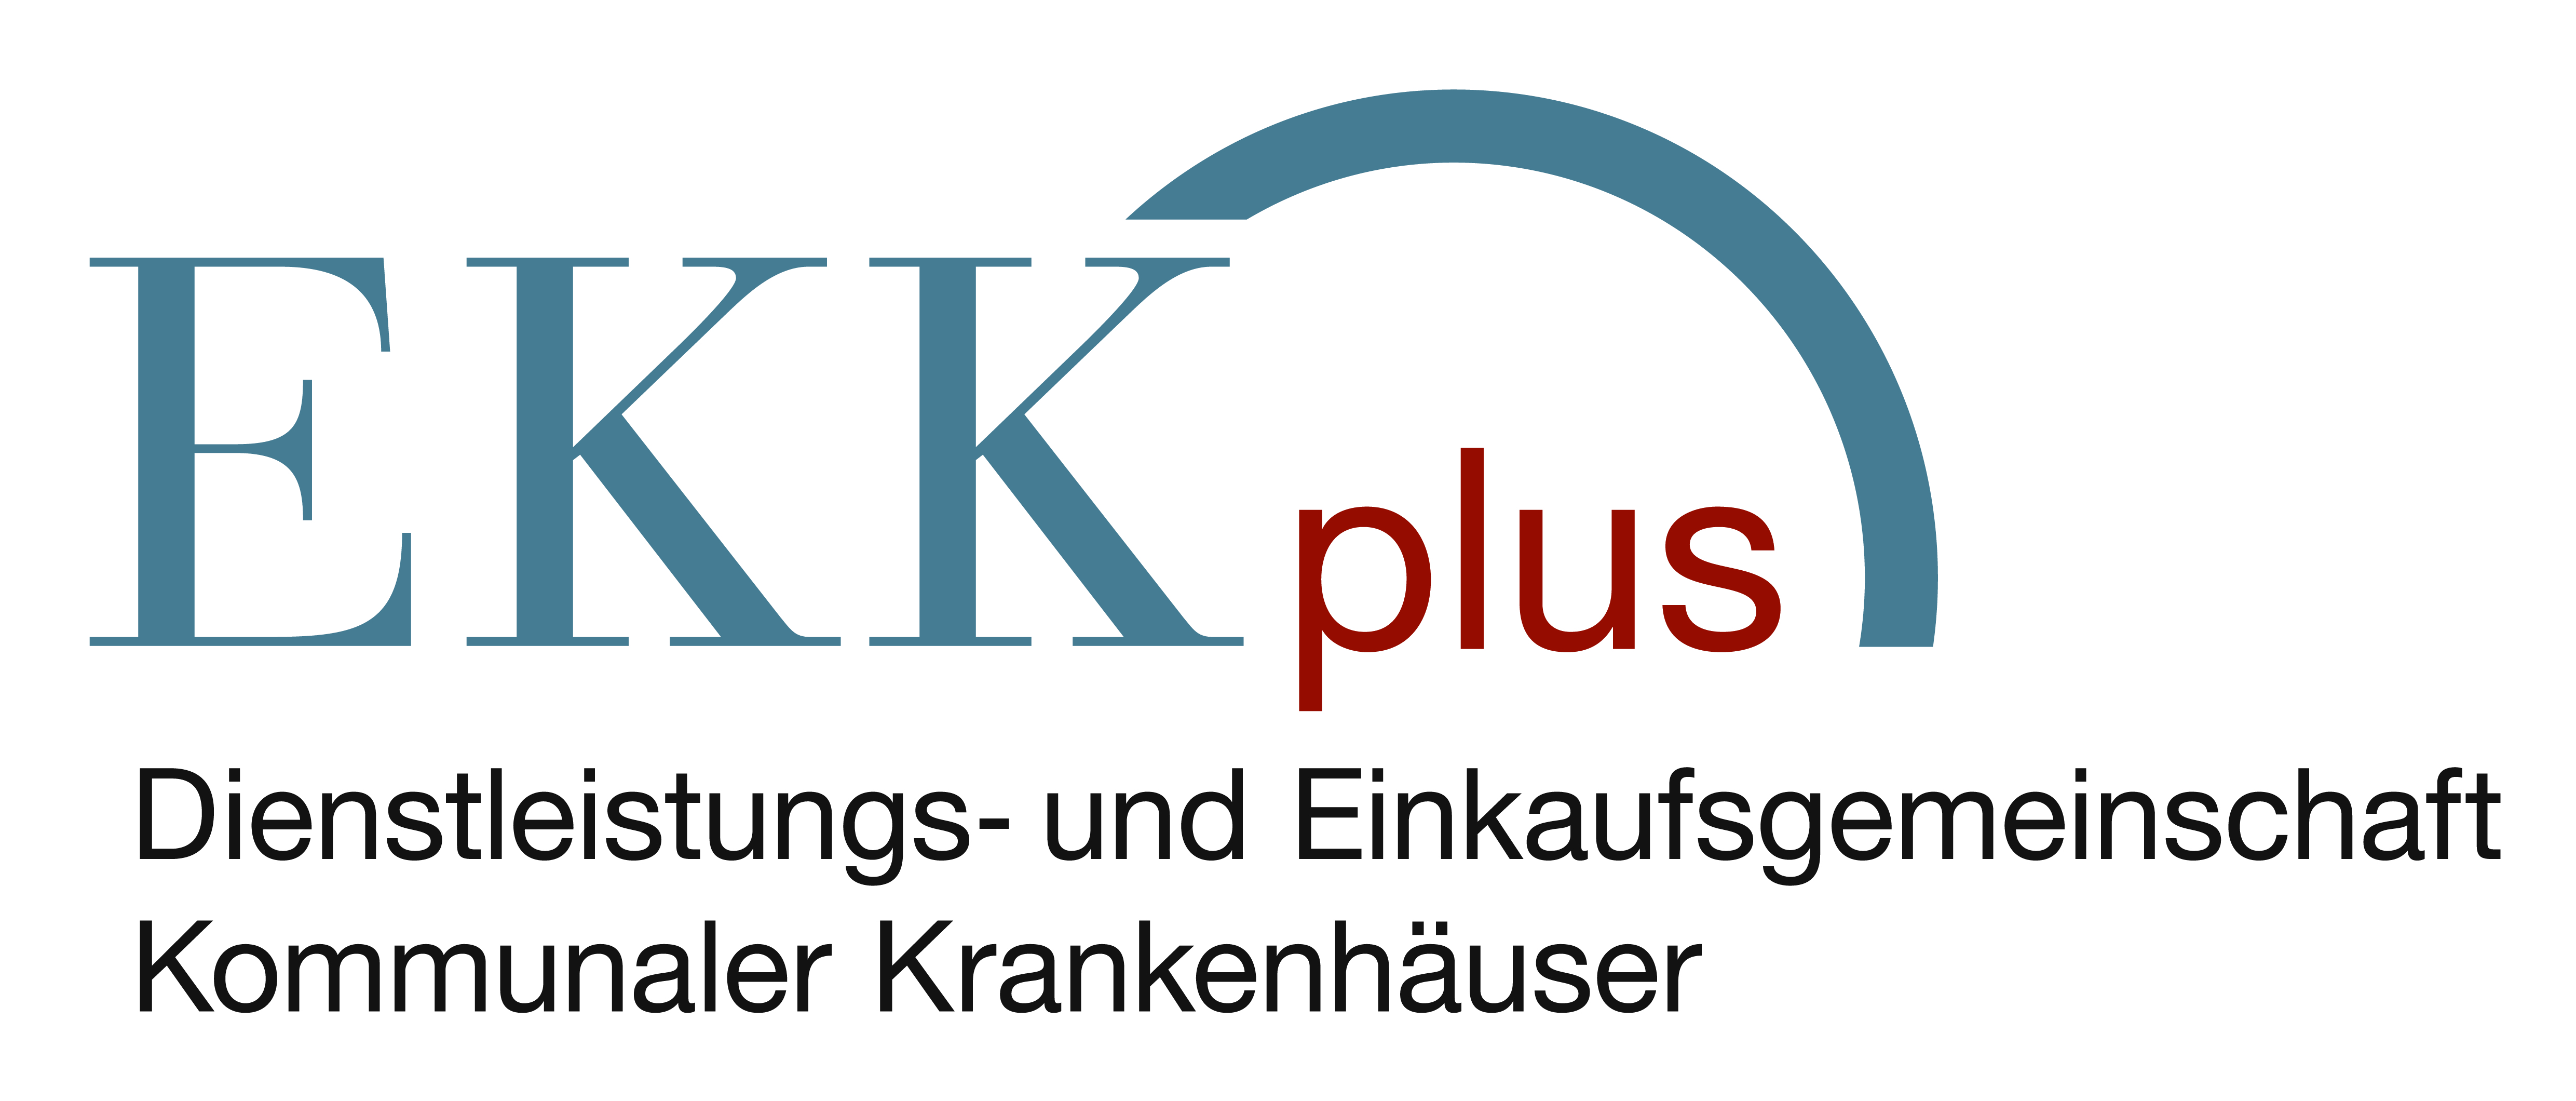 EKK plus GmbH - Dienstleistungs- und Einkaufsgemeinschaft Kommunaler Krankenhäuser